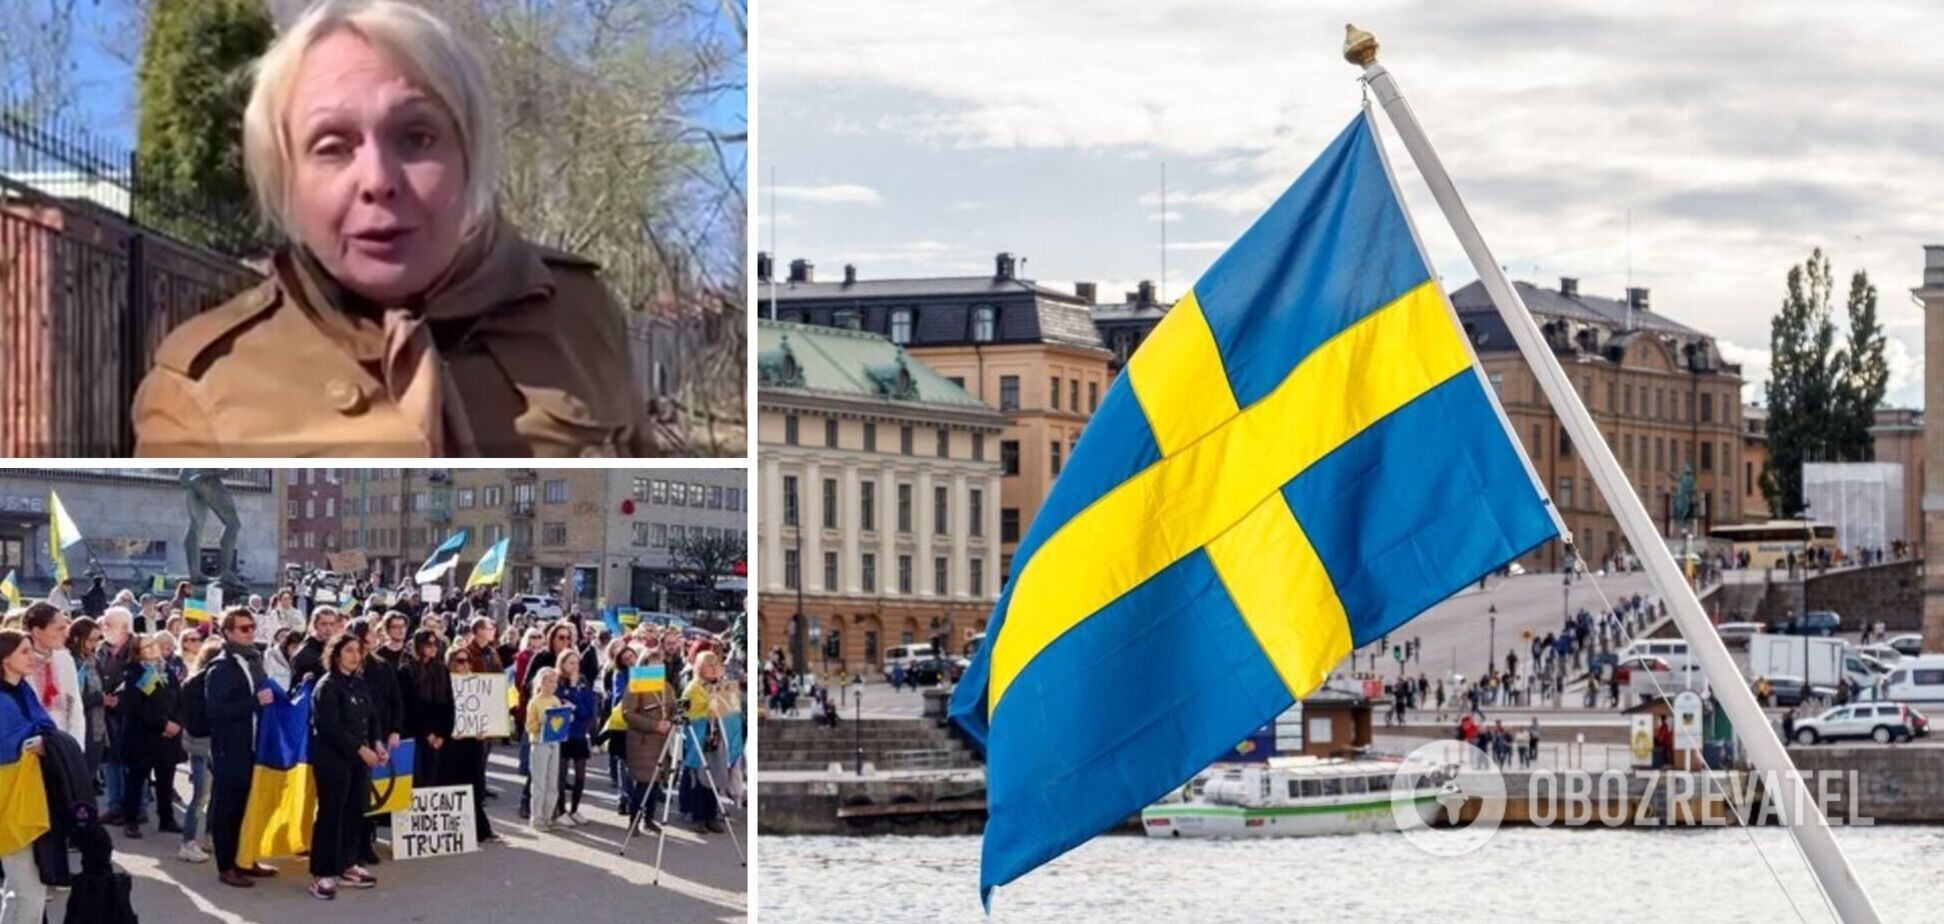 'Ви тухлі брудні фашисти!' У Швеції росіянка позривала з вулиць українську символіку і намагалася принизити українку. Відео